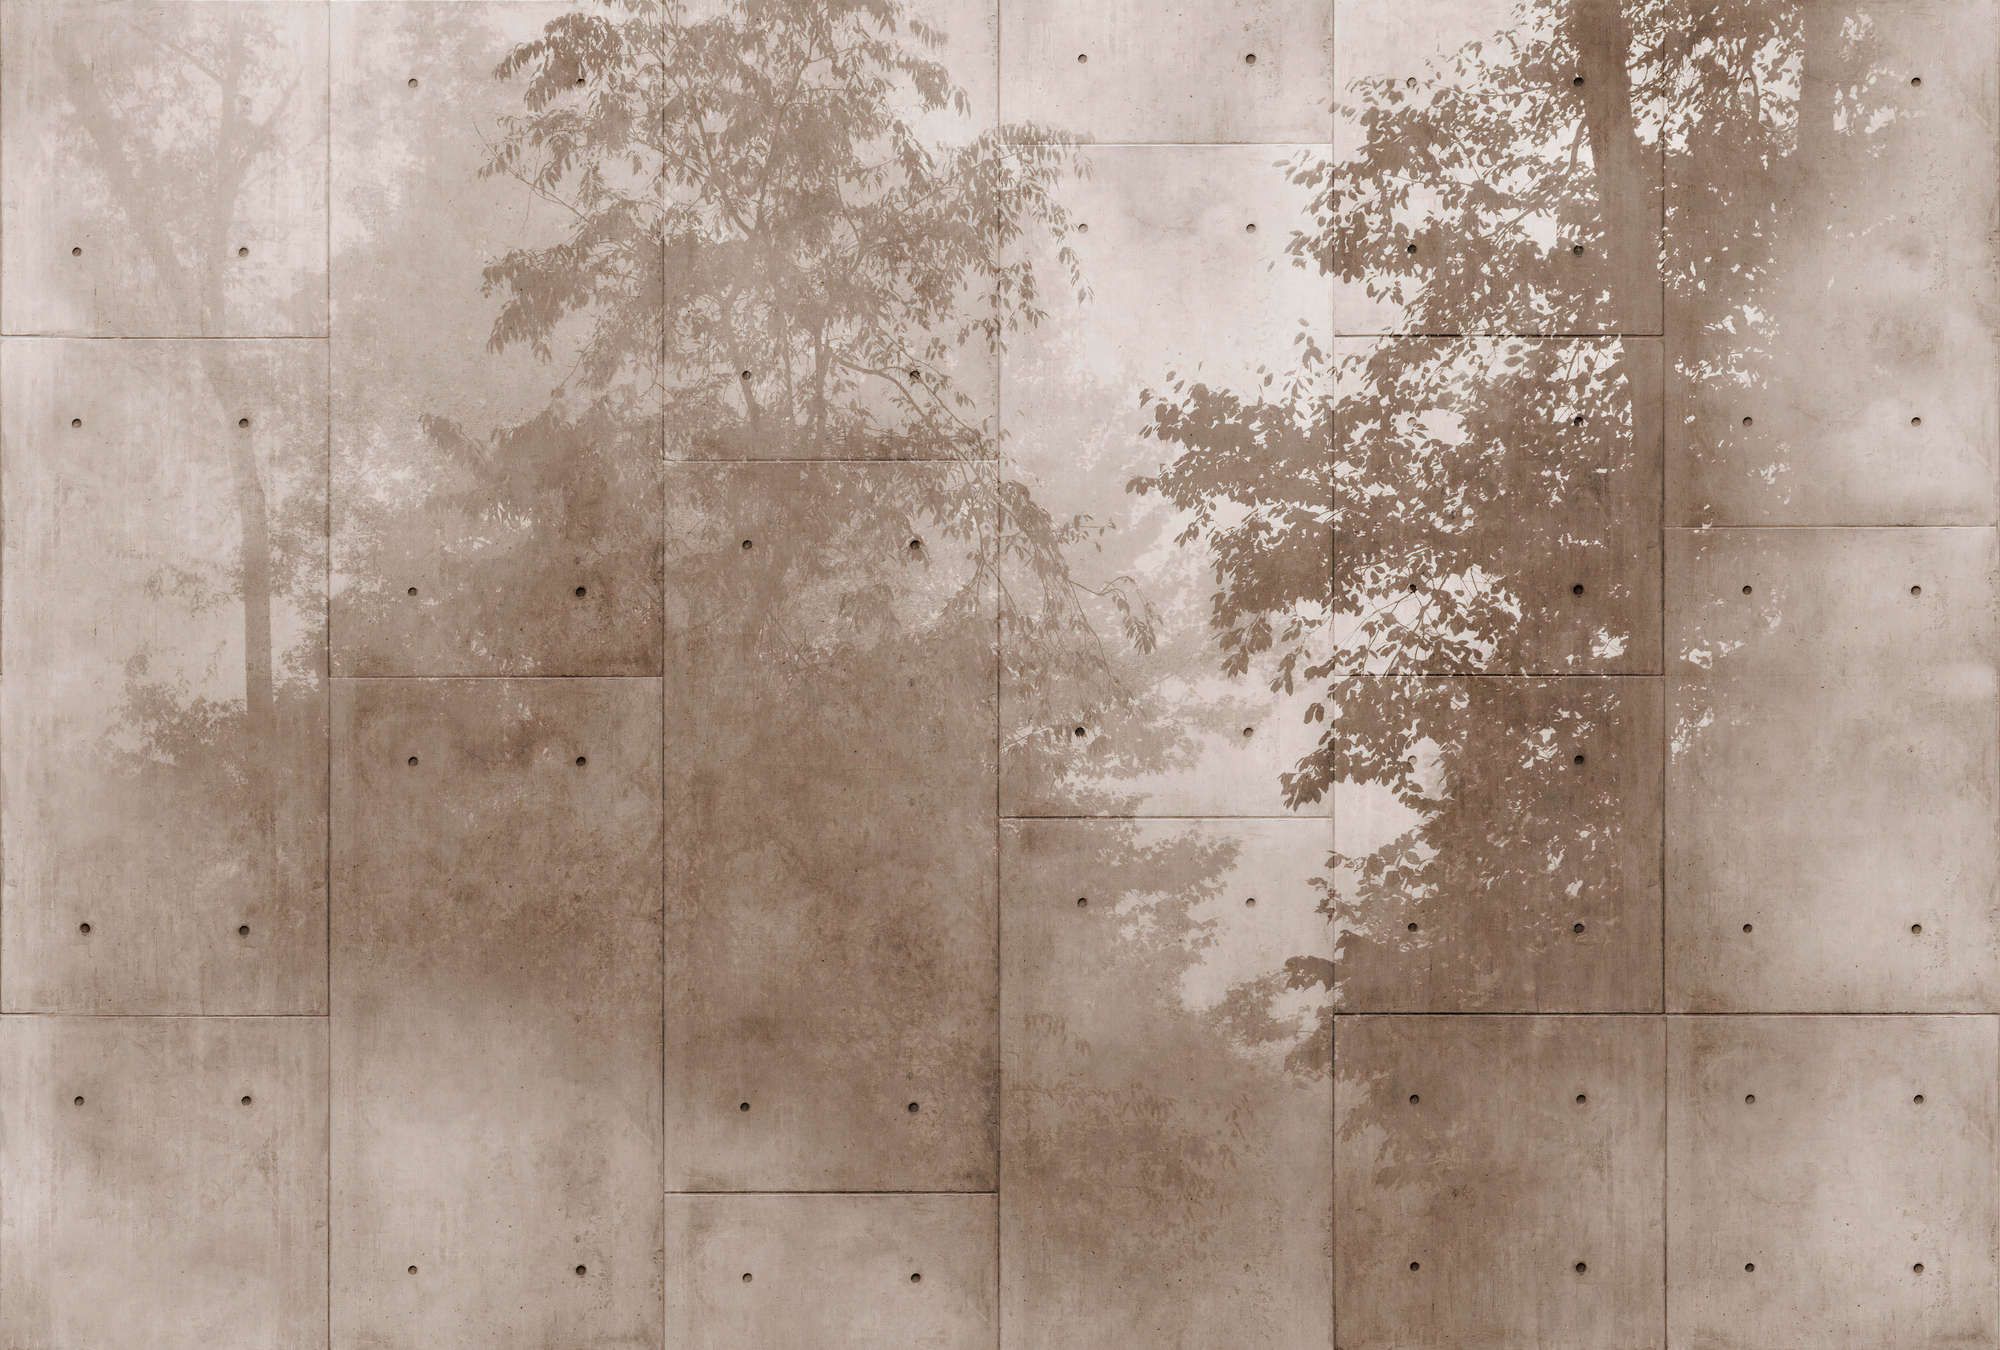             Fotomural »mytho« - Copas de árboles sobre losas de hormigón - Tela no tejida de alta calidad, lisa y ligeramente brillante
        